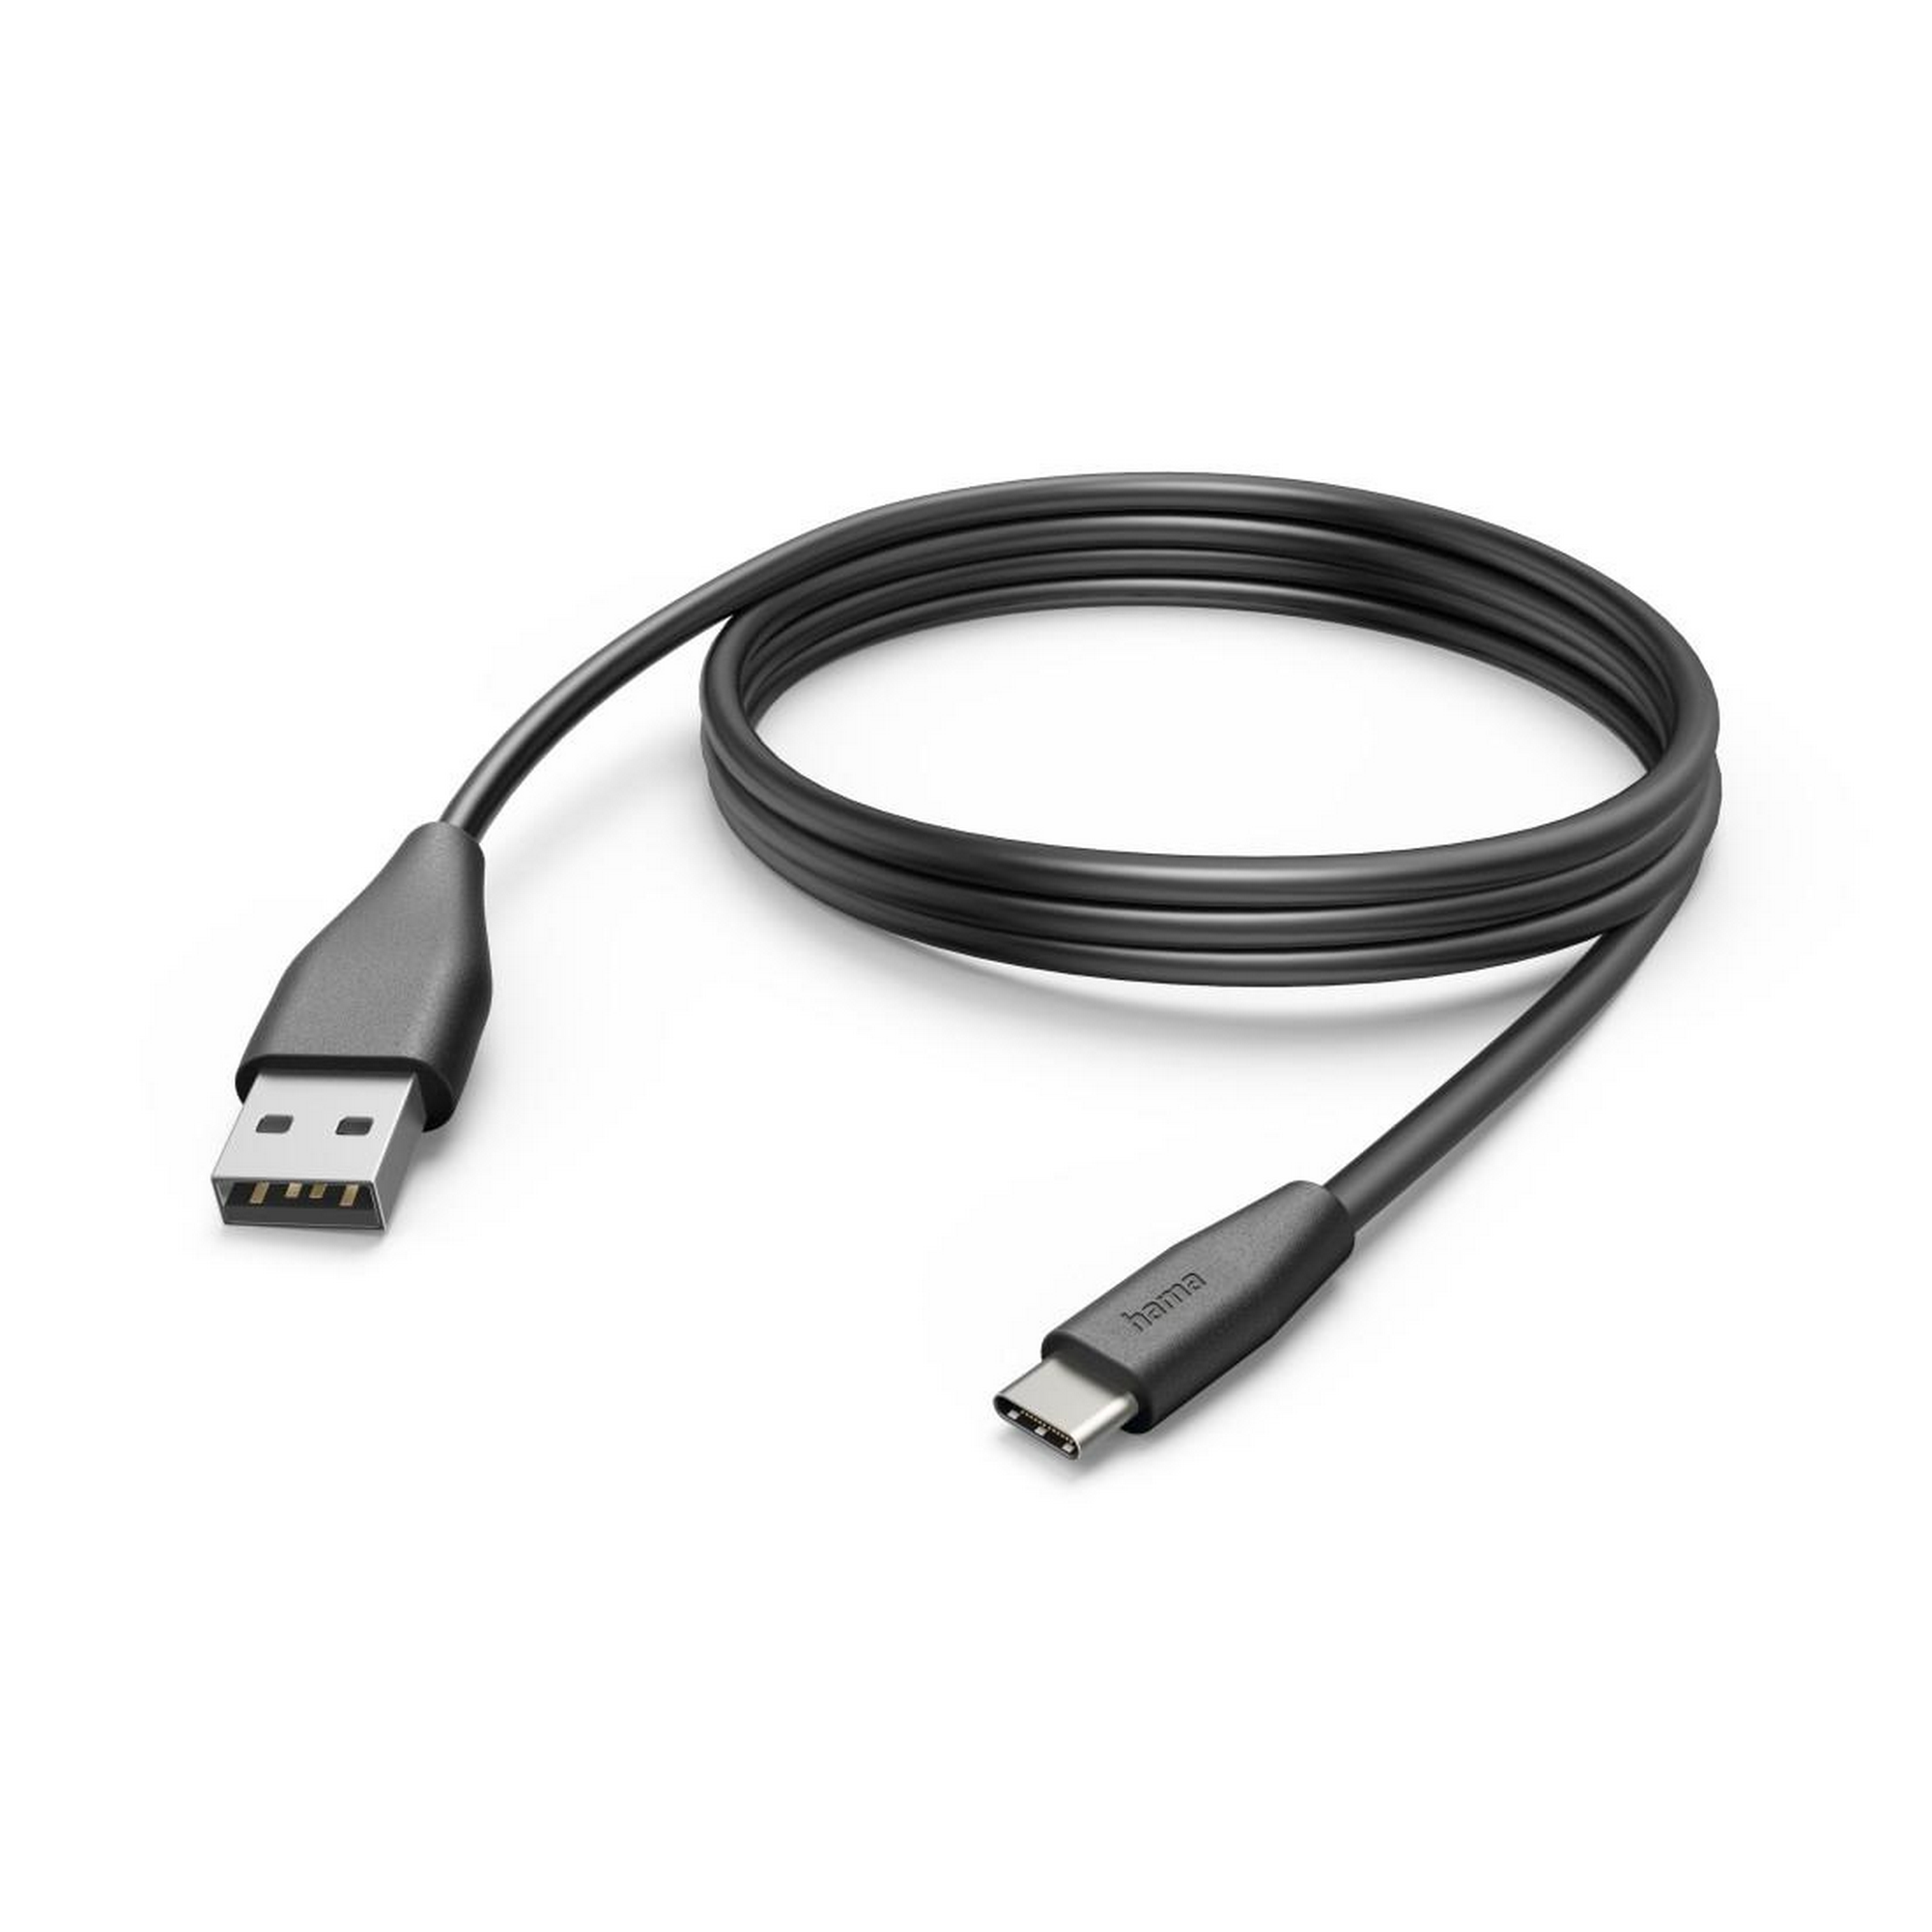 Ladekabel schwarz USB-C mit USB-A 3 m + product picture